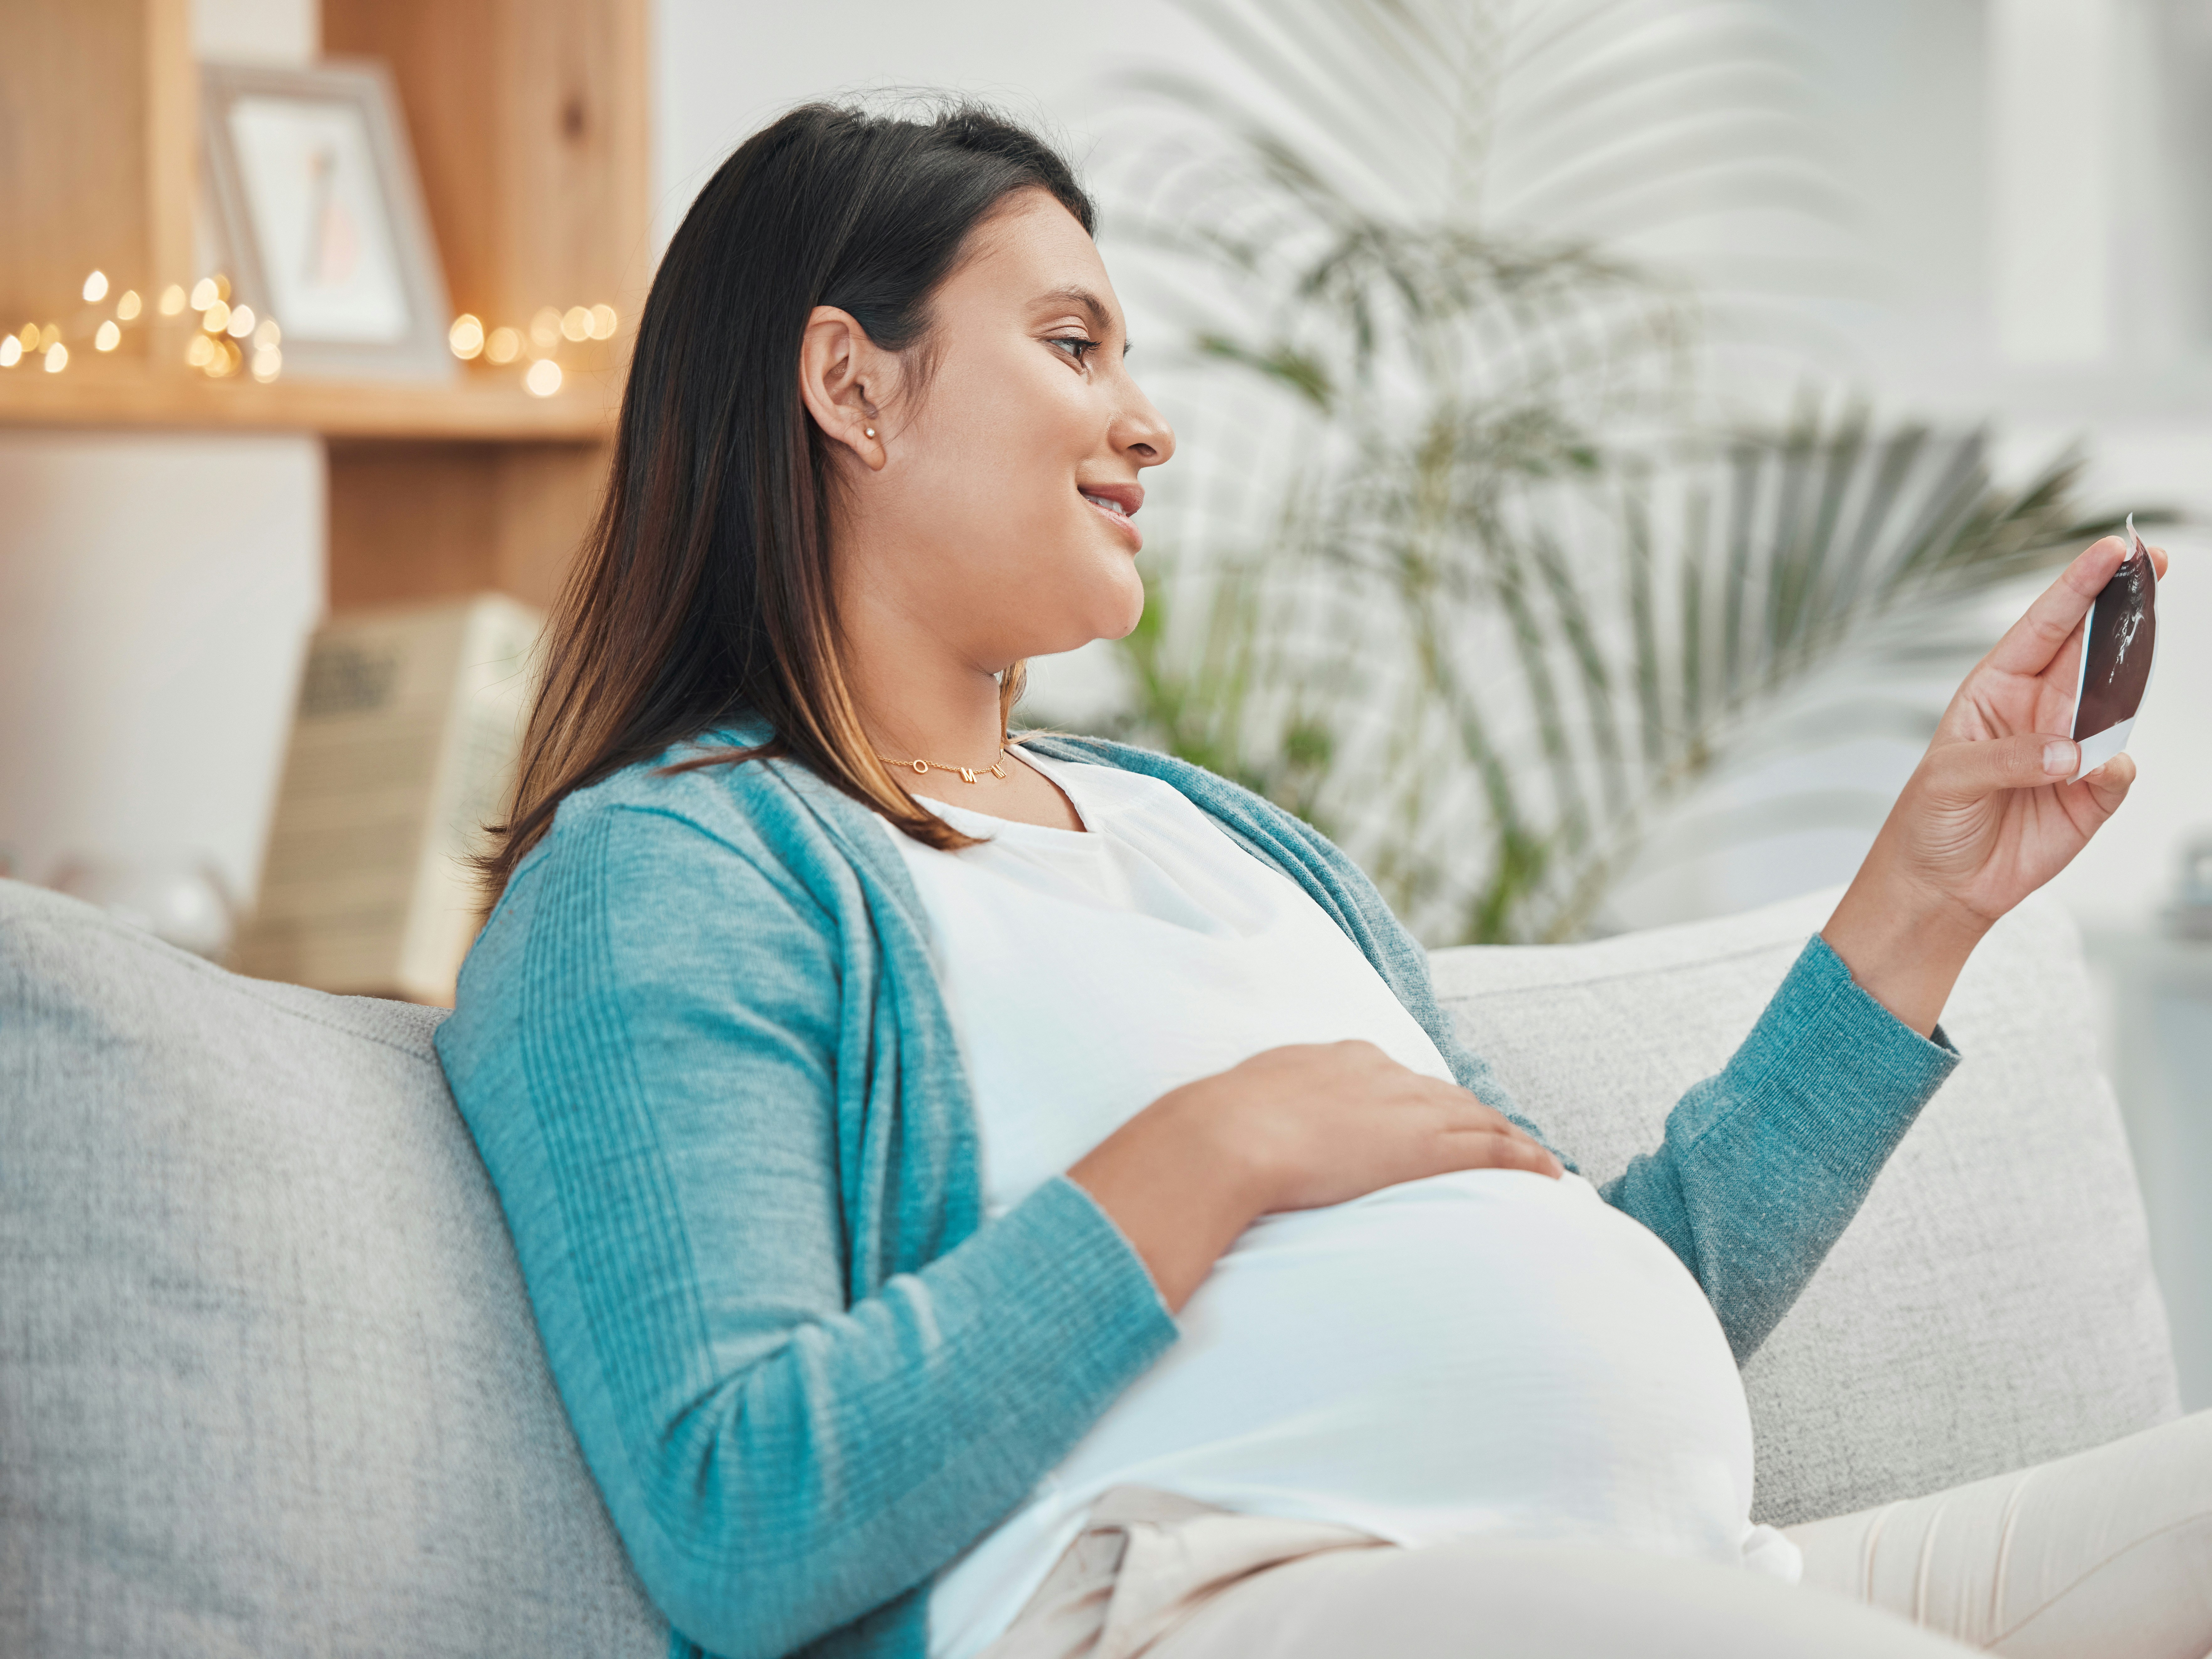 Midaldrende gravid kvinder ser på scanningsbillede af barnet